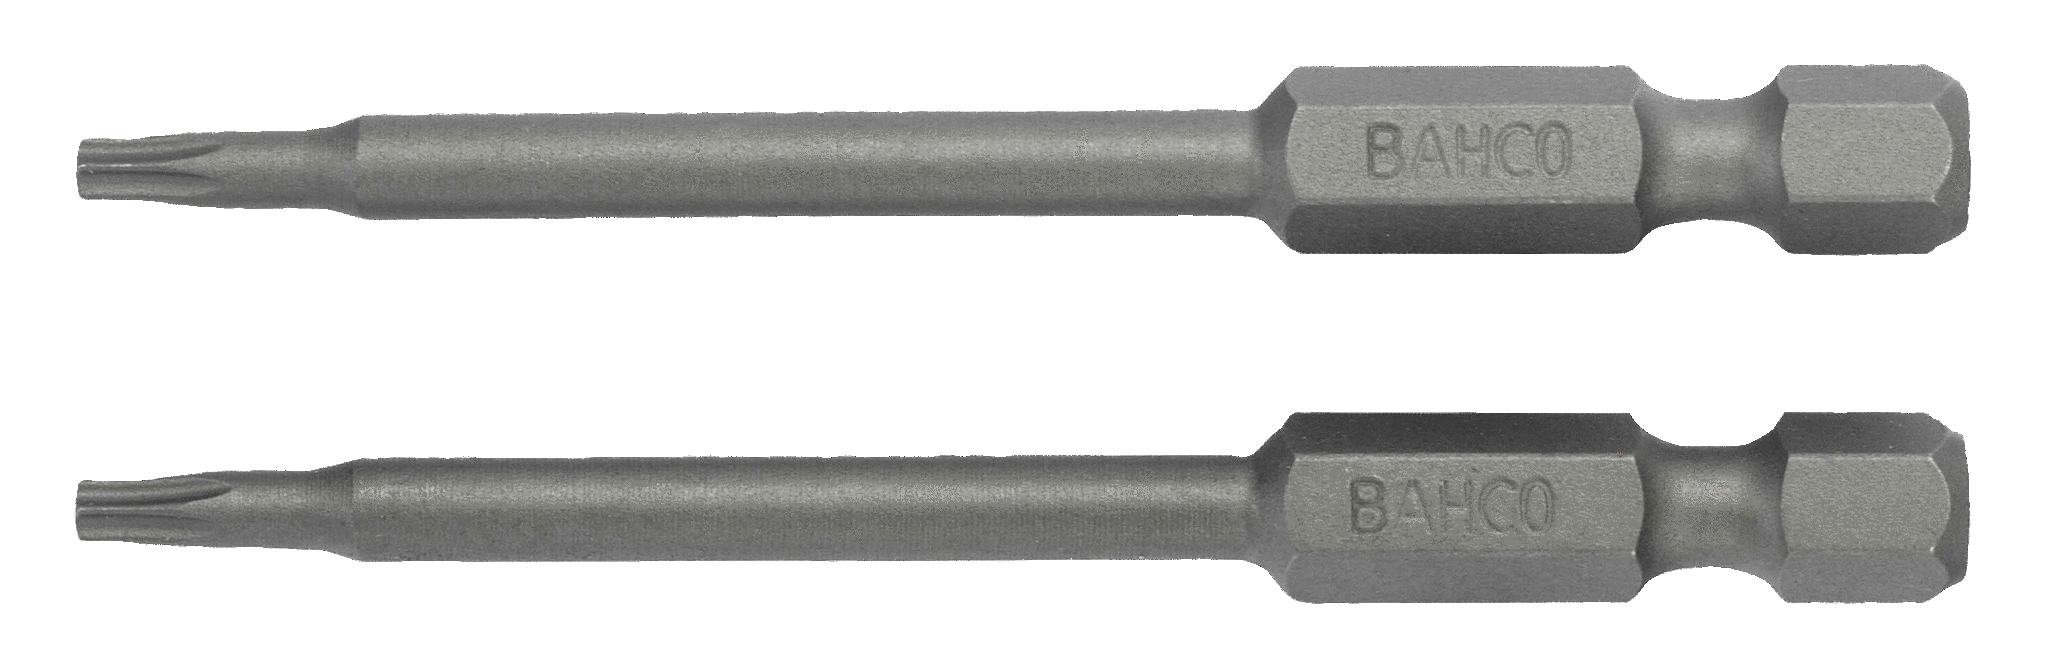 картинка Стандартные биты для отверток Torx®, 70 мм BAHCO 59S/70T27-2P от магазина "Элит-инструмент"